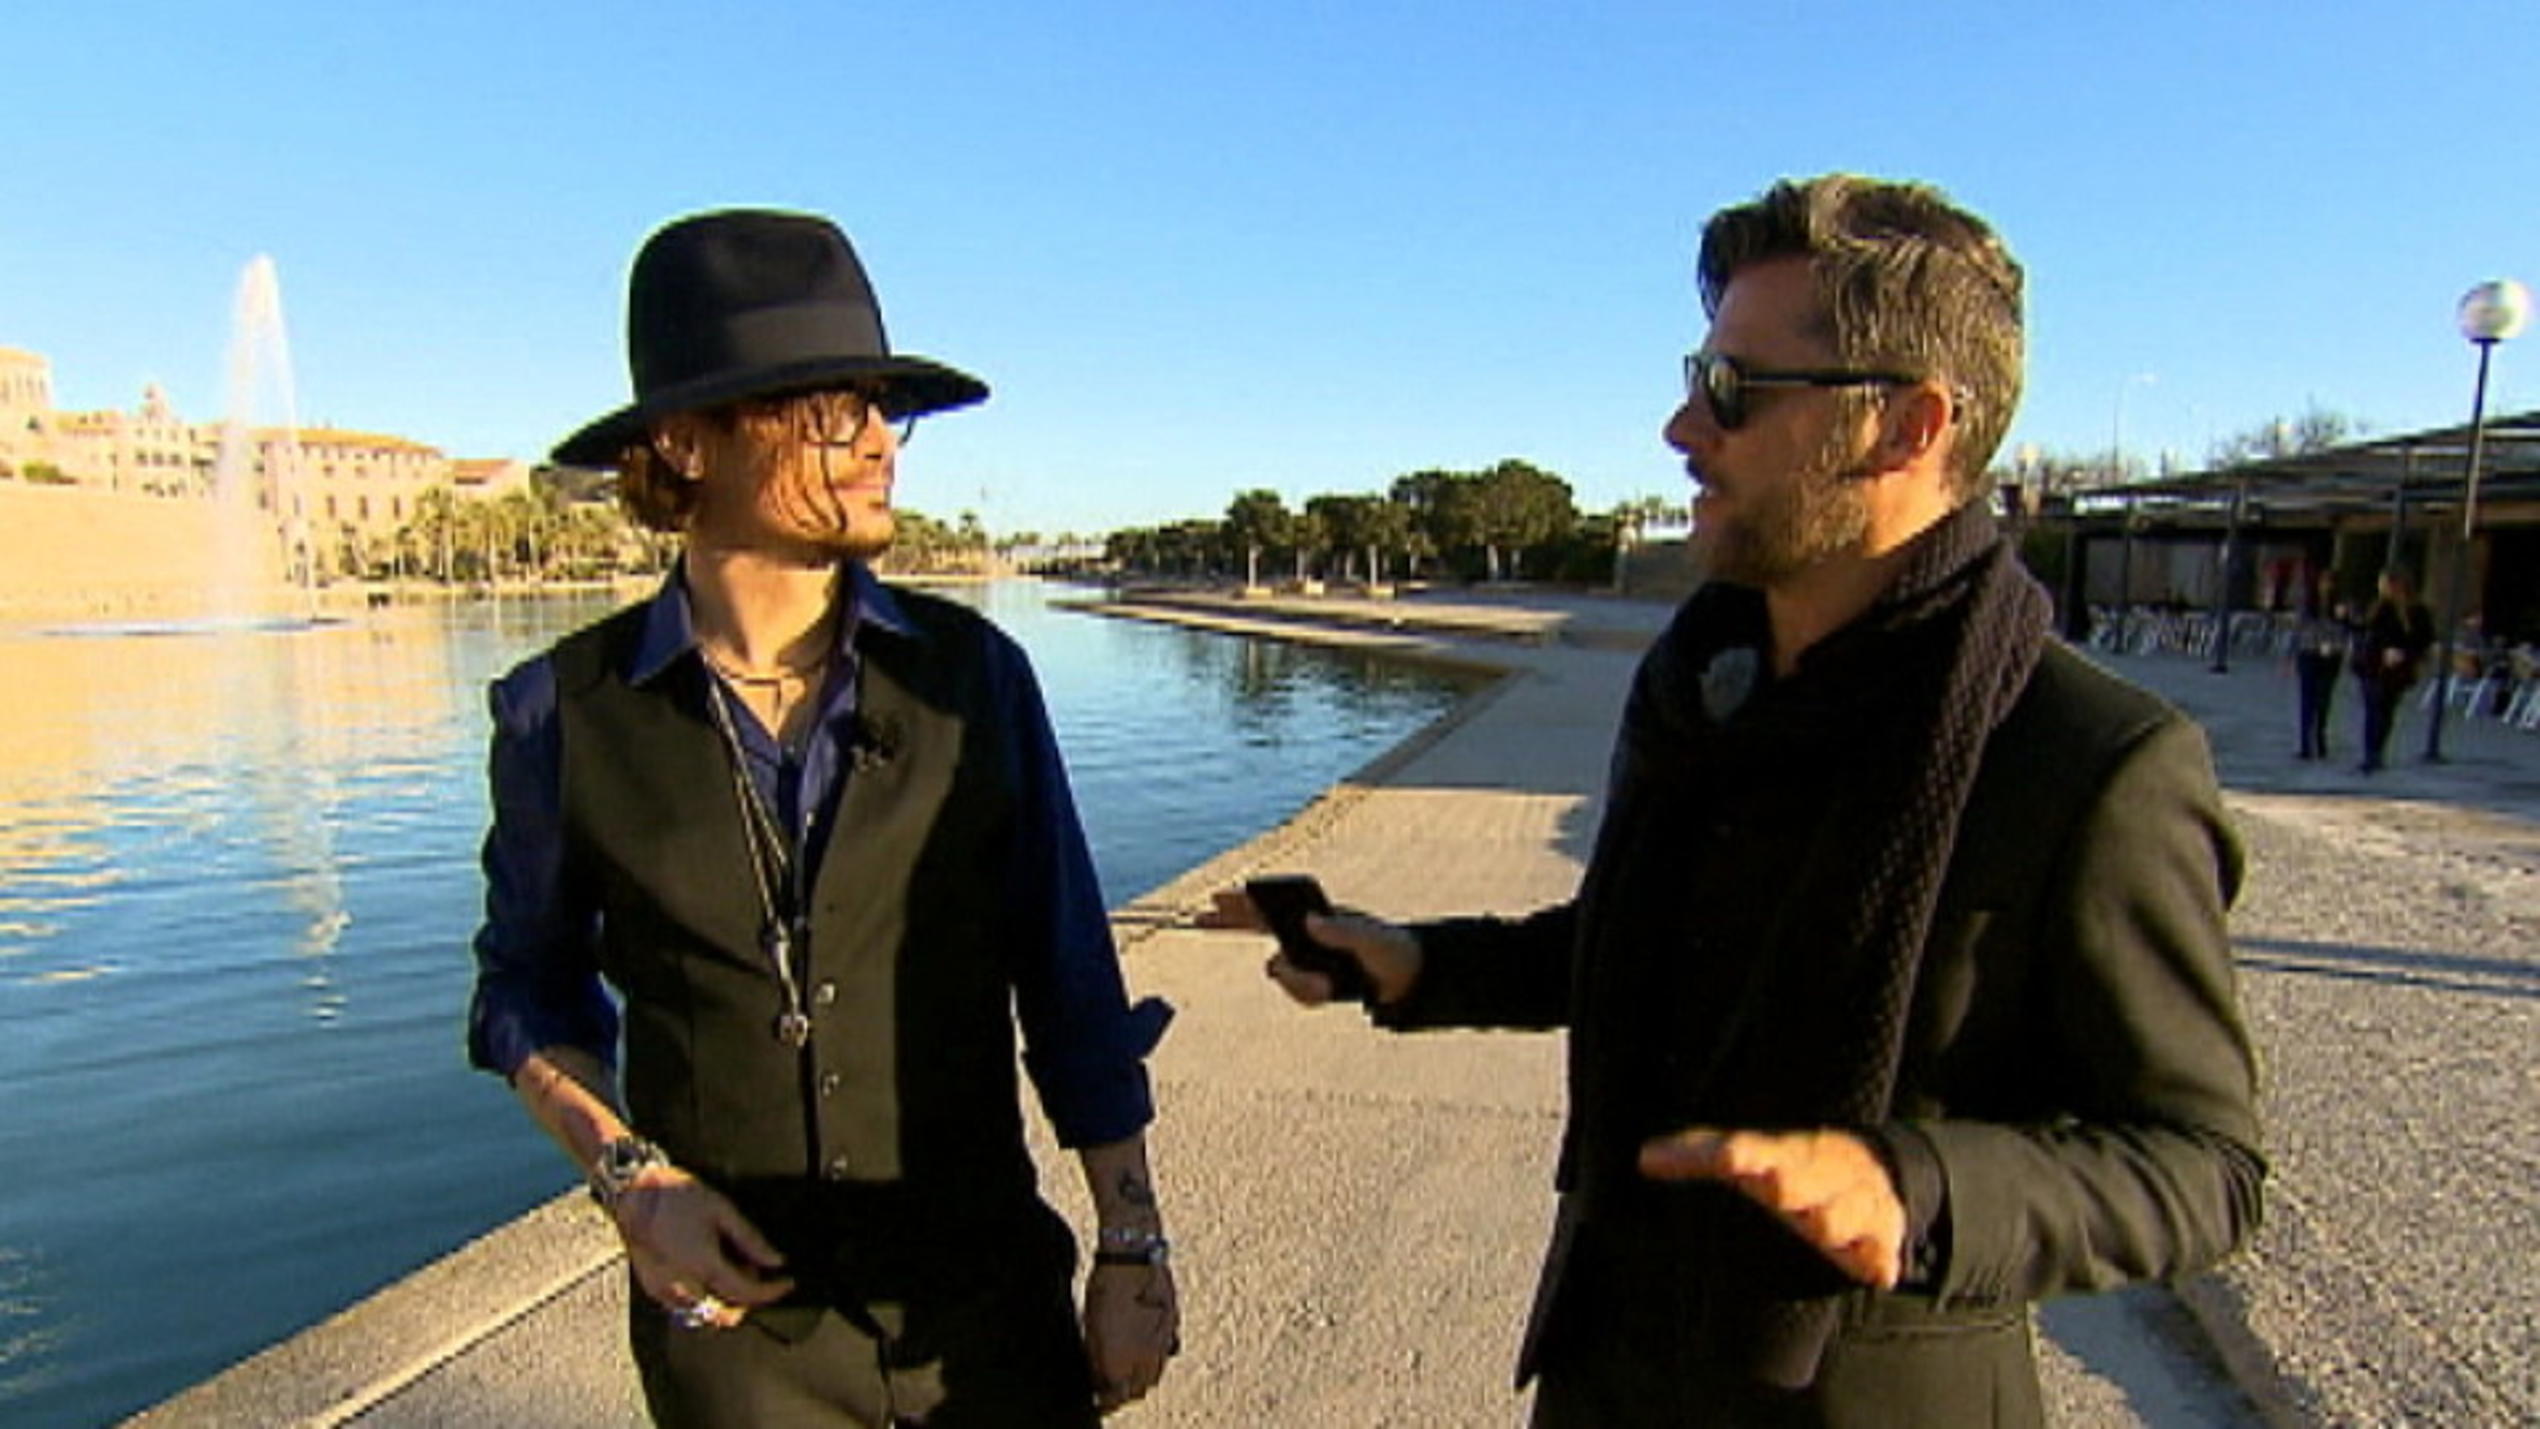 mieten, kaufen, wohnen: Daniel Klein mit Johnny Depp-Doppelgänger auf Mallorca